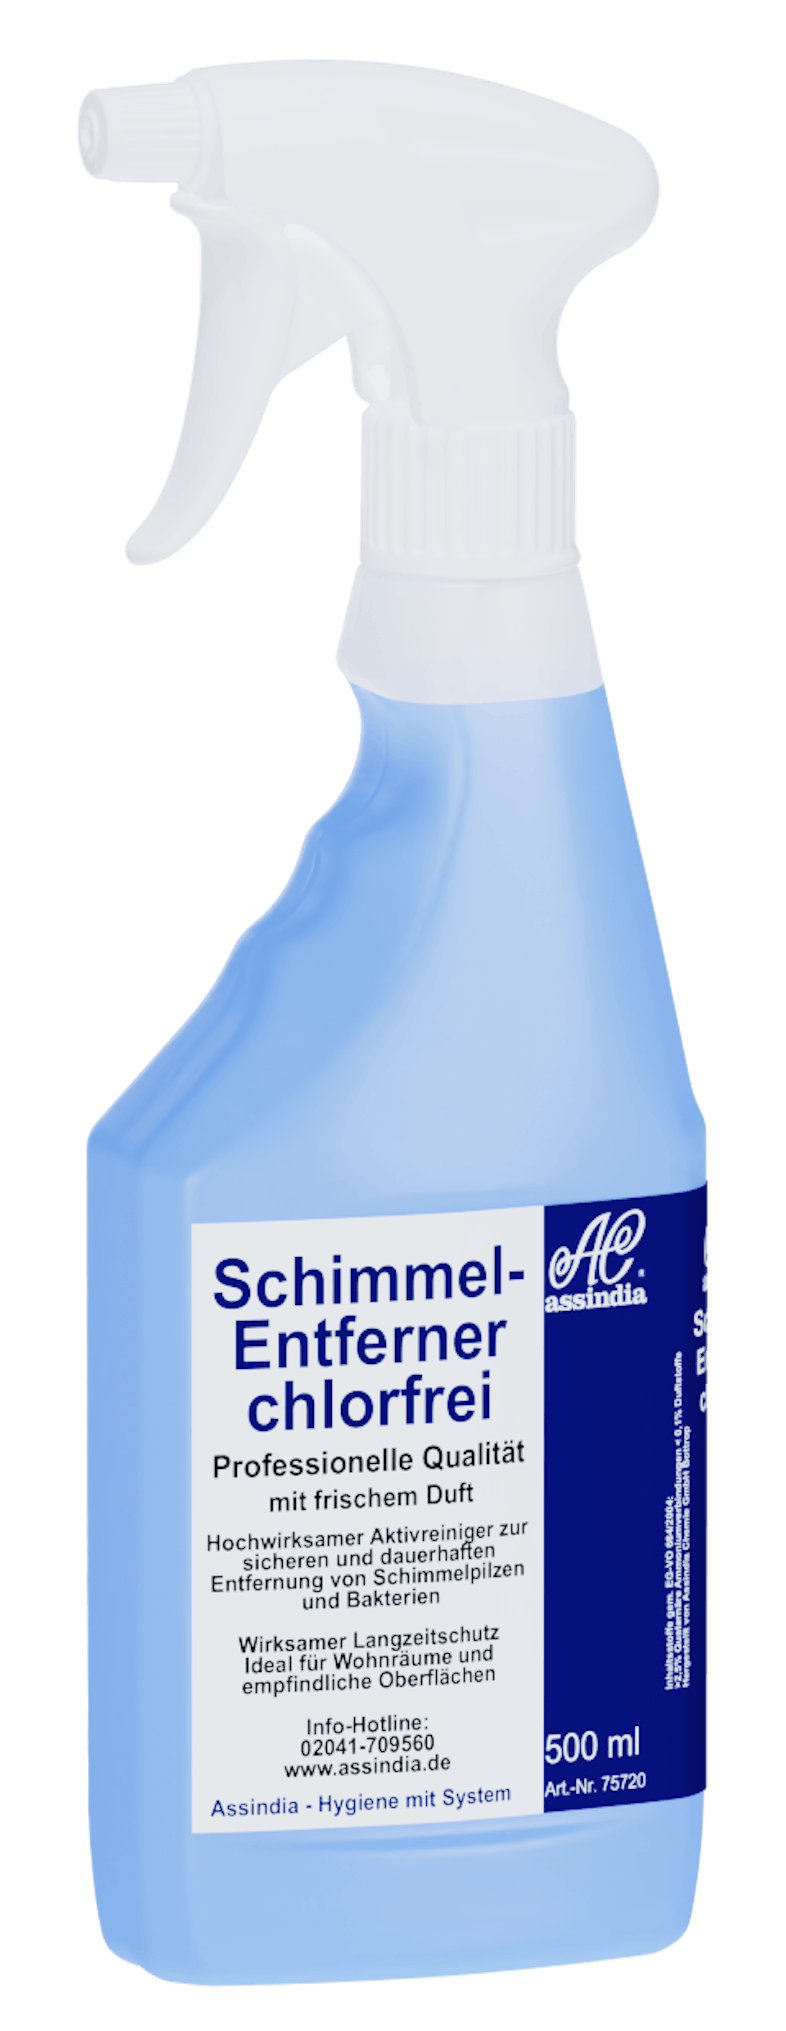 Schimmelentferner Professional chlorfrei 500ml Sprayer